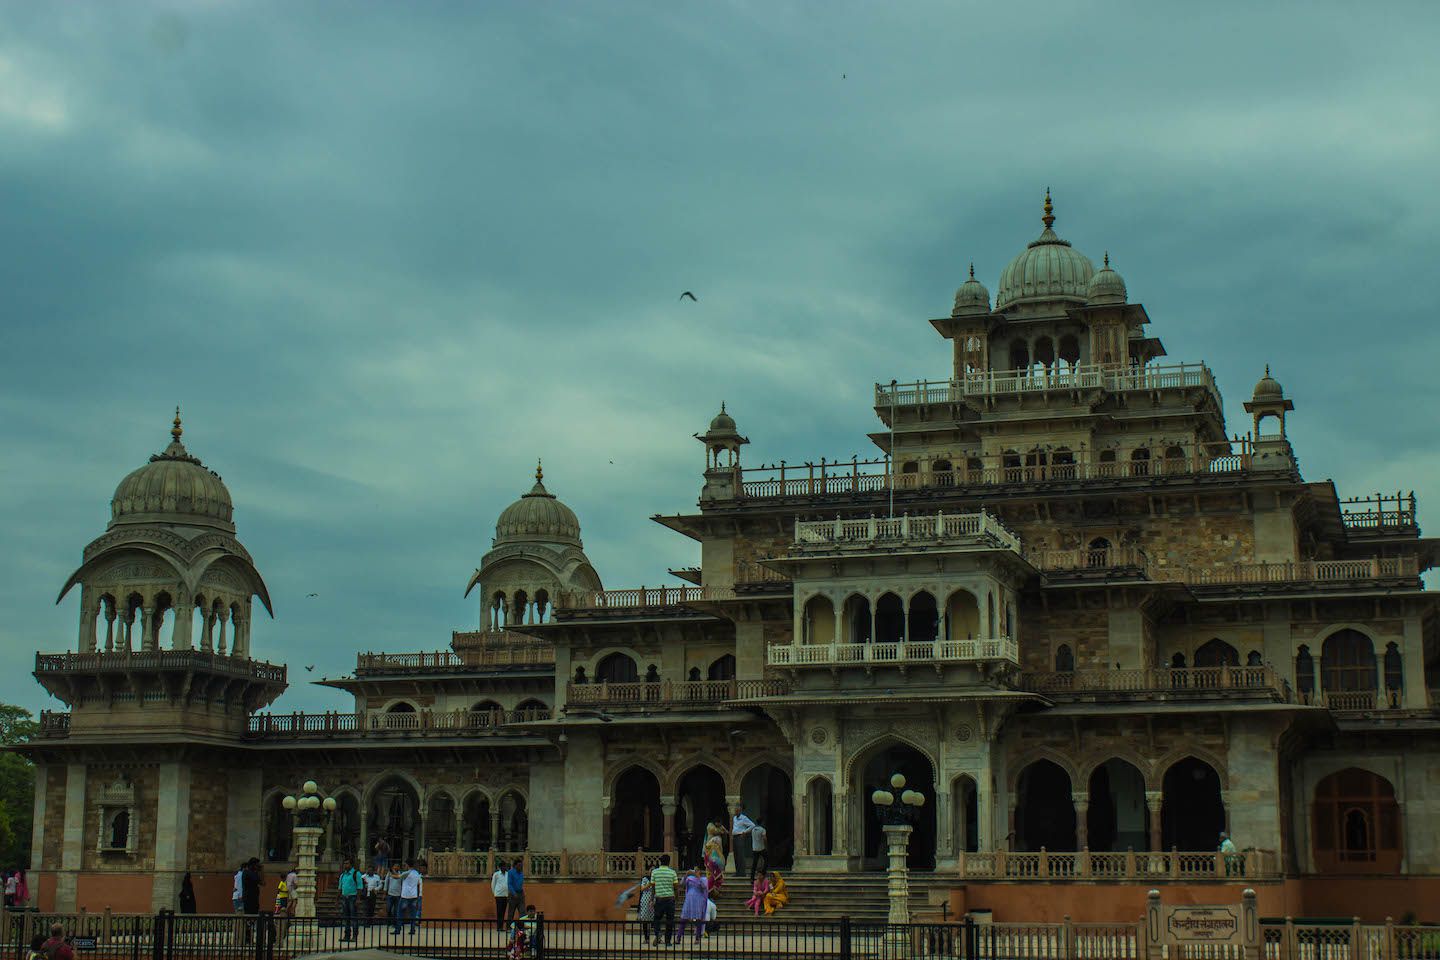 City Palace of Jaipur, India